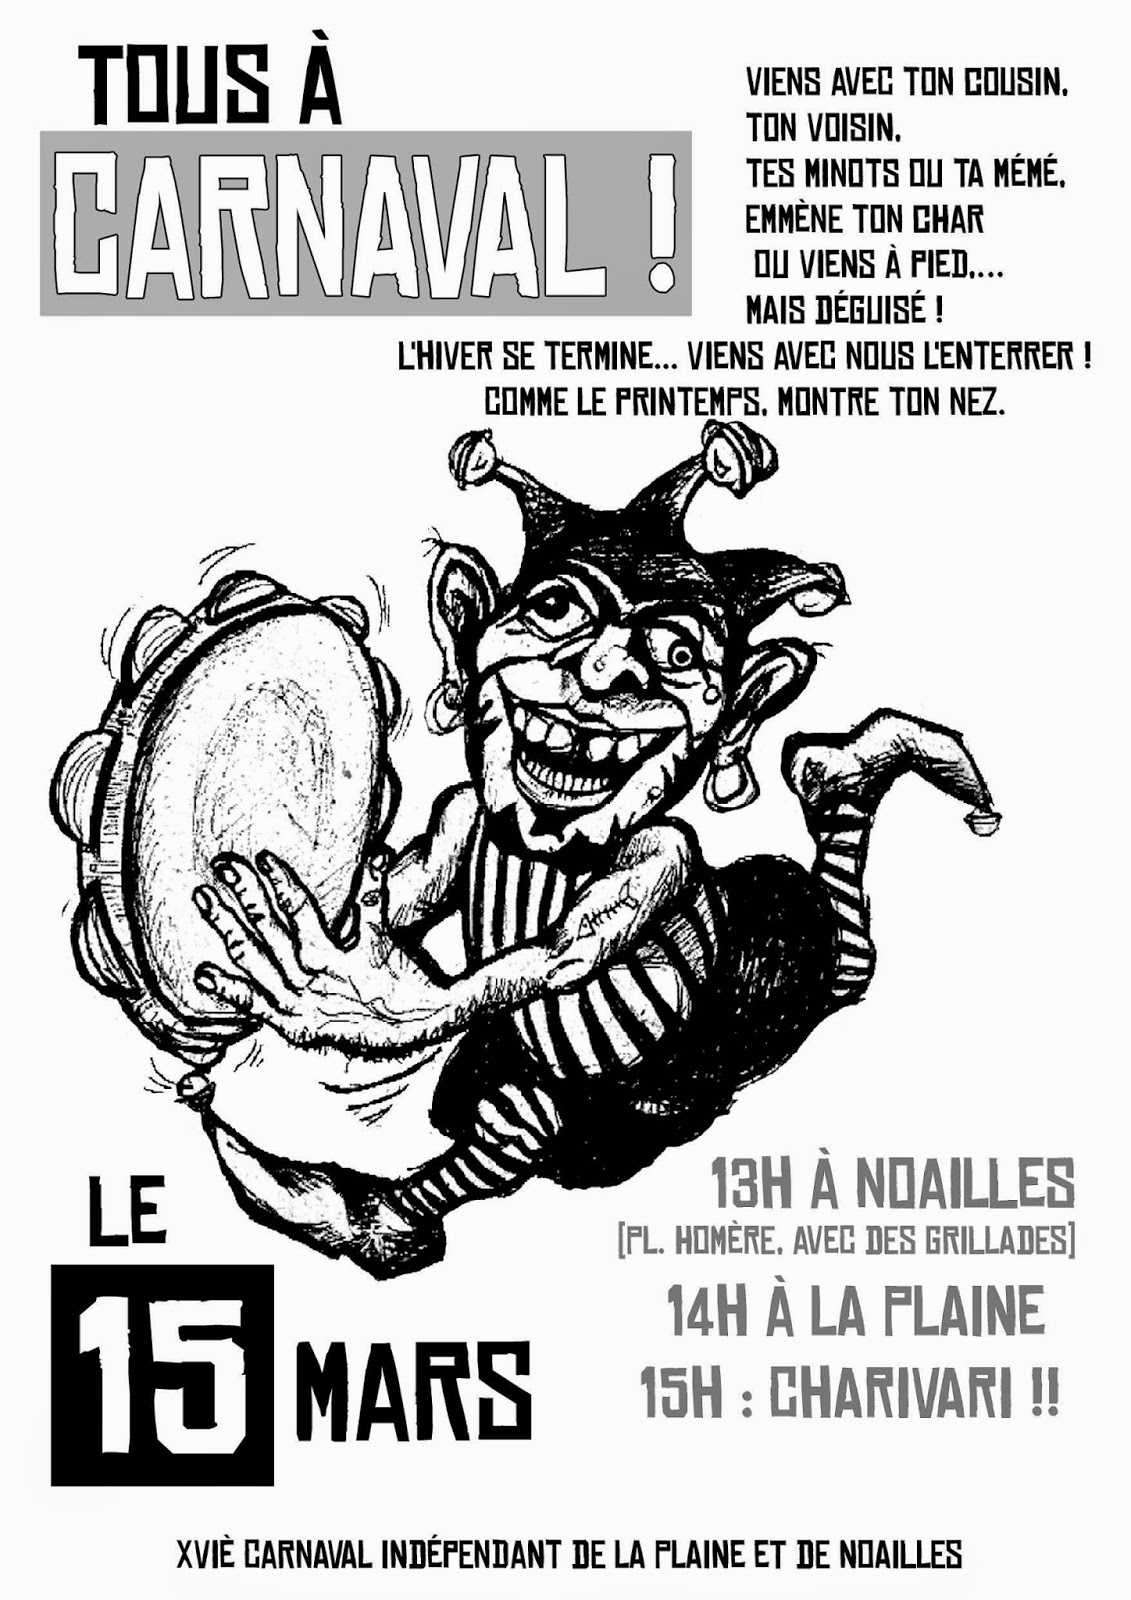 Carnaval de la Plaine et de Noailles à Marseille le dimanche 15 Mars 2015 !